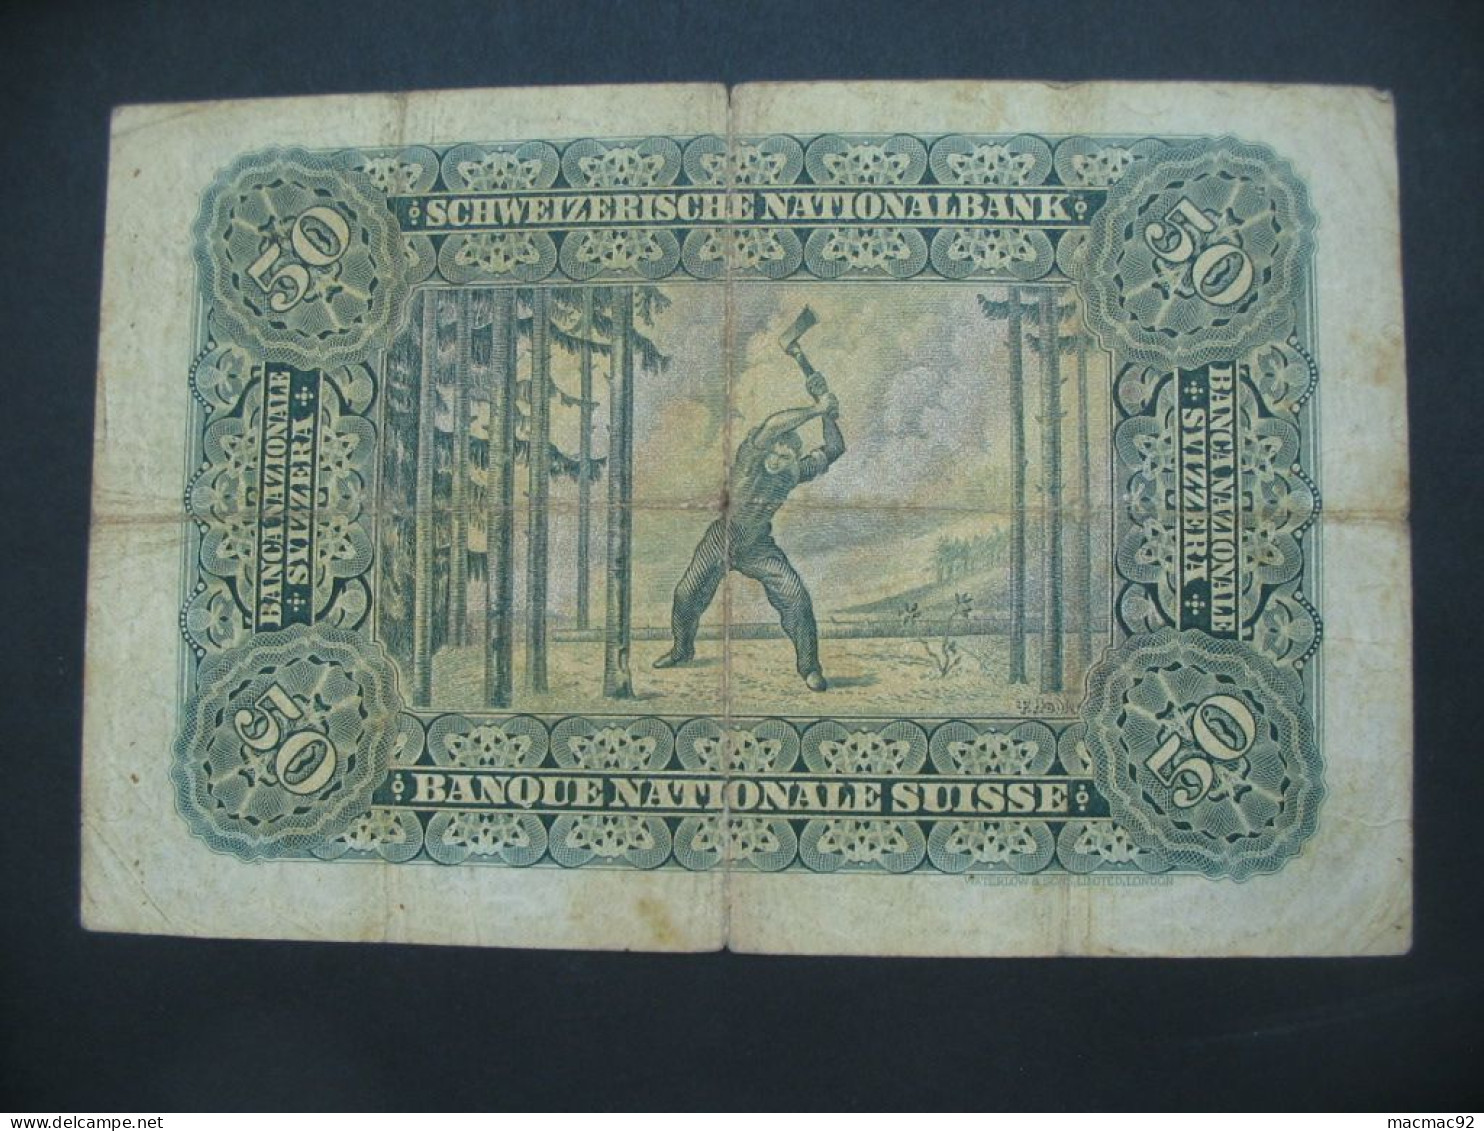 RARE Billet Suisse - 50 Francs 1937 Schweizerische Nationalbank **** EN ACHAT IMMEDIAT **** - Schweiz